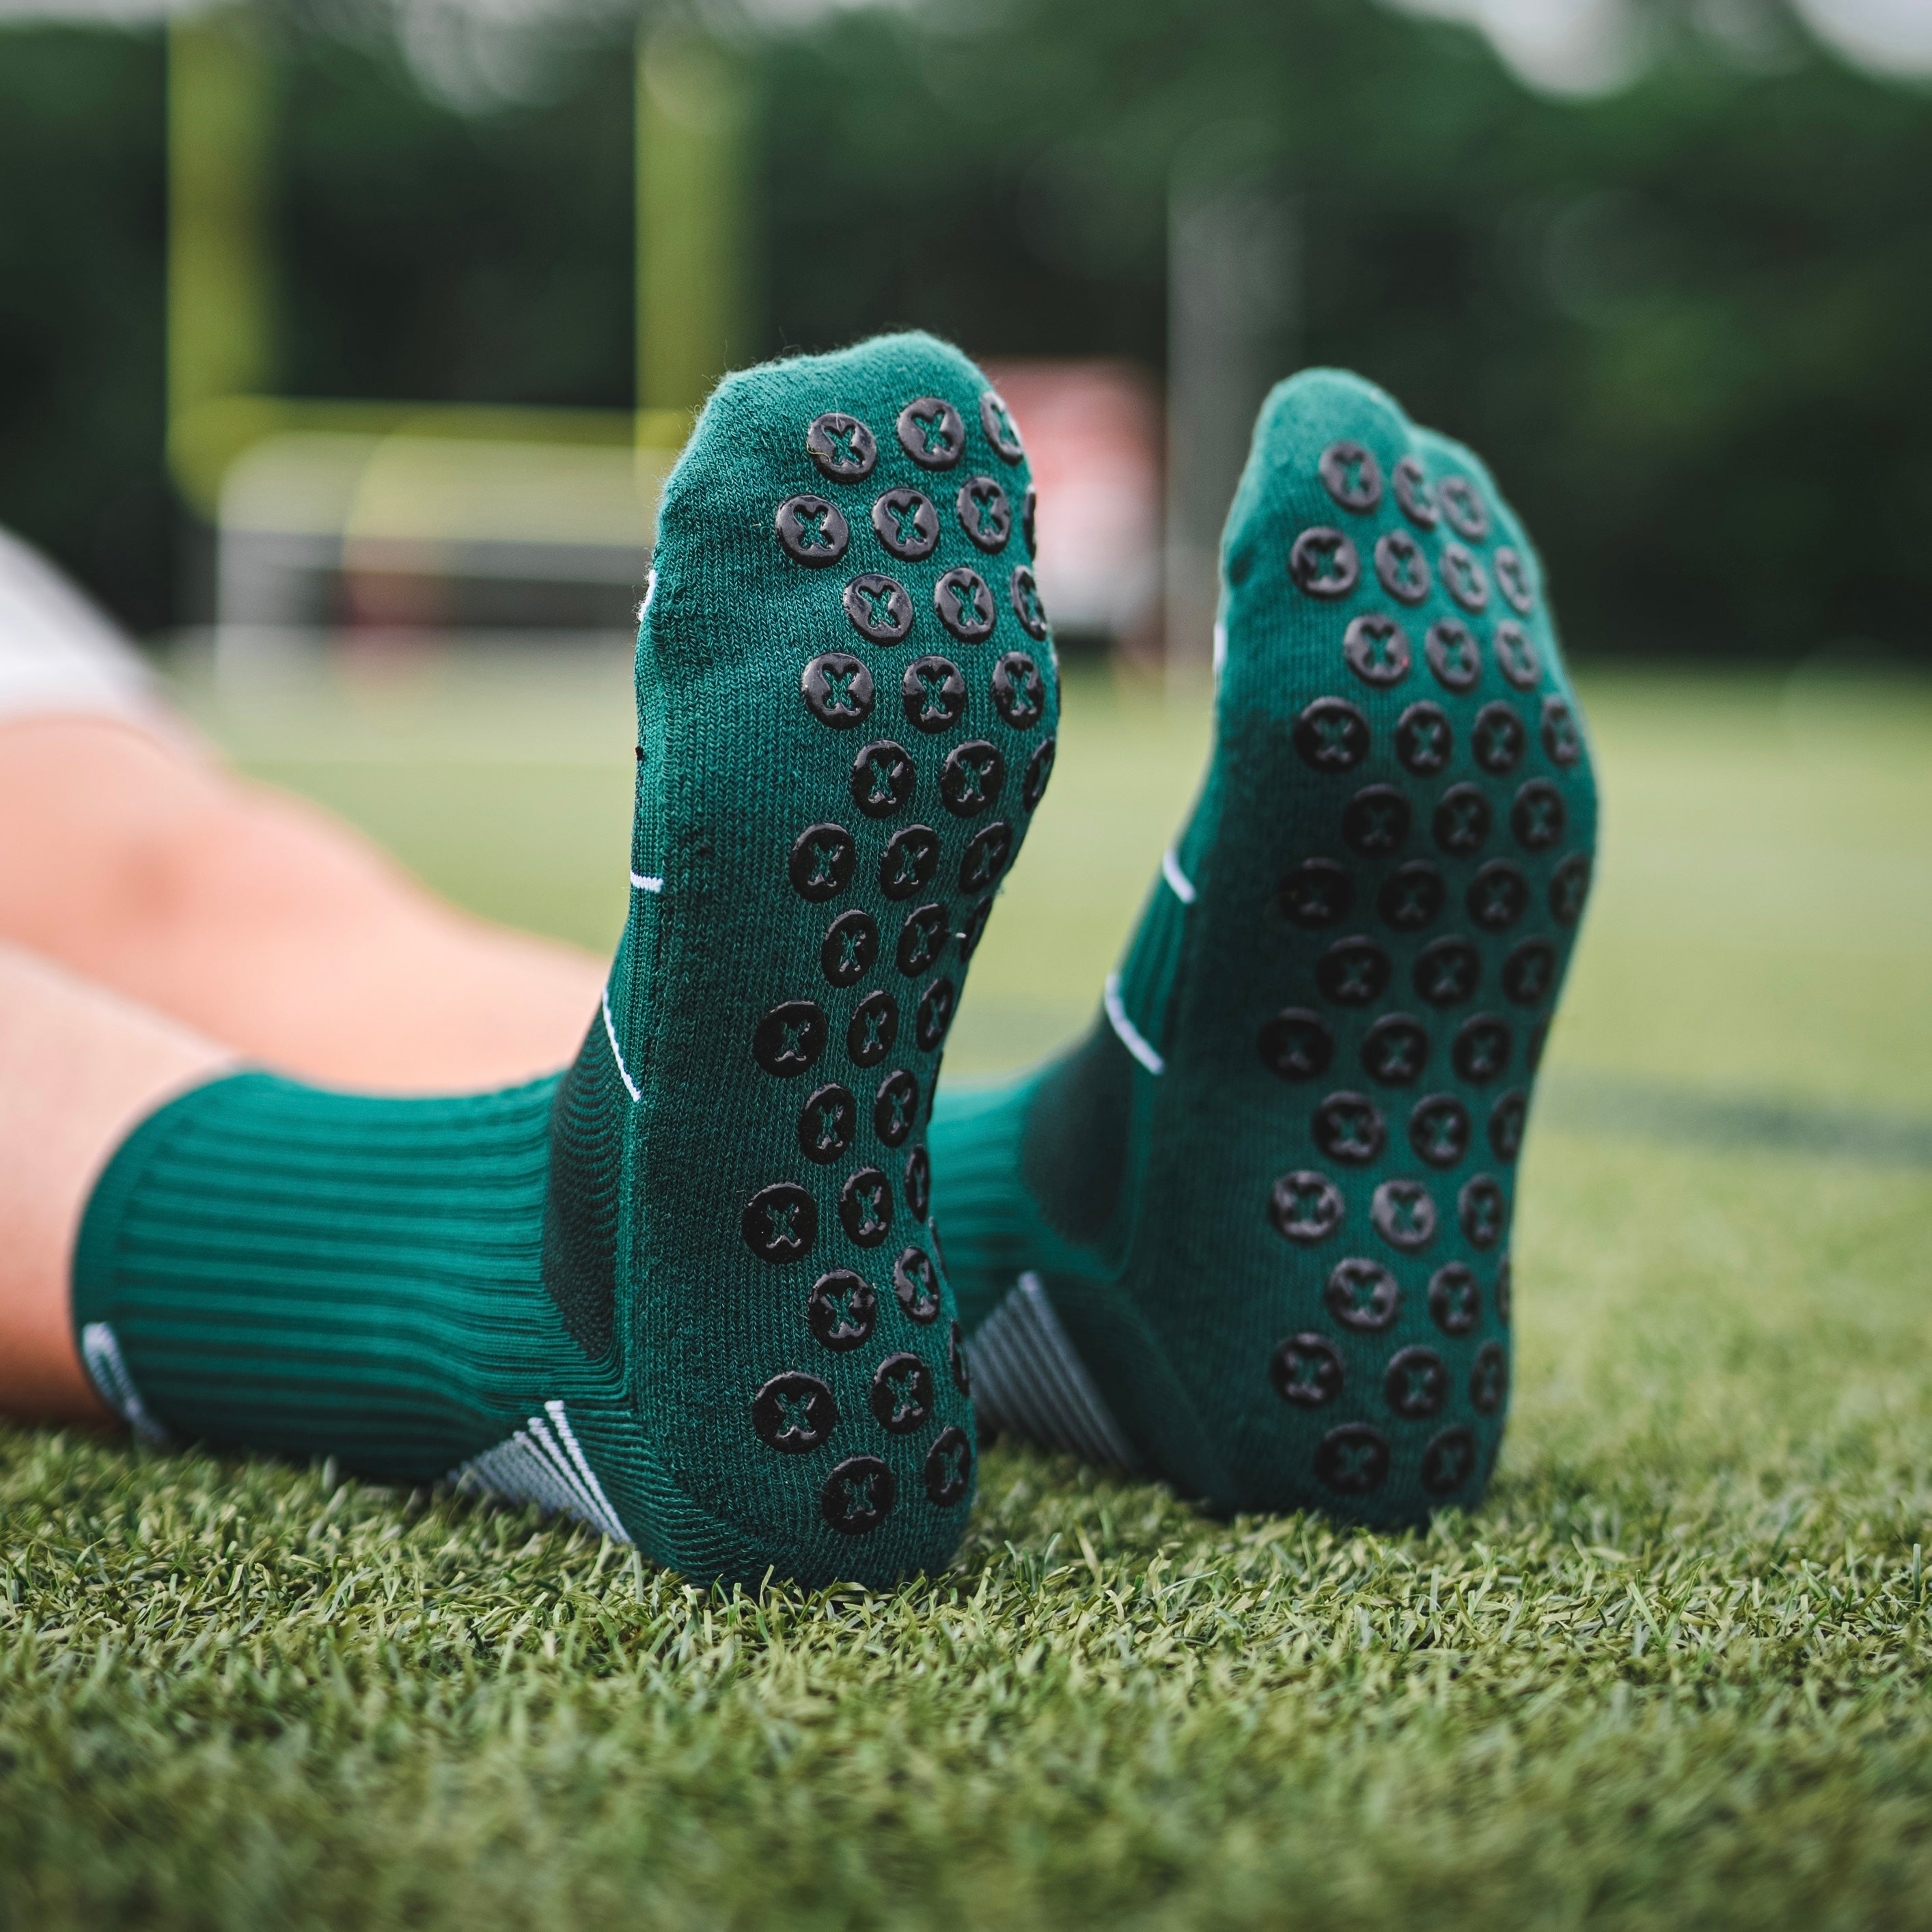 Green FUTBLR Grip Socks